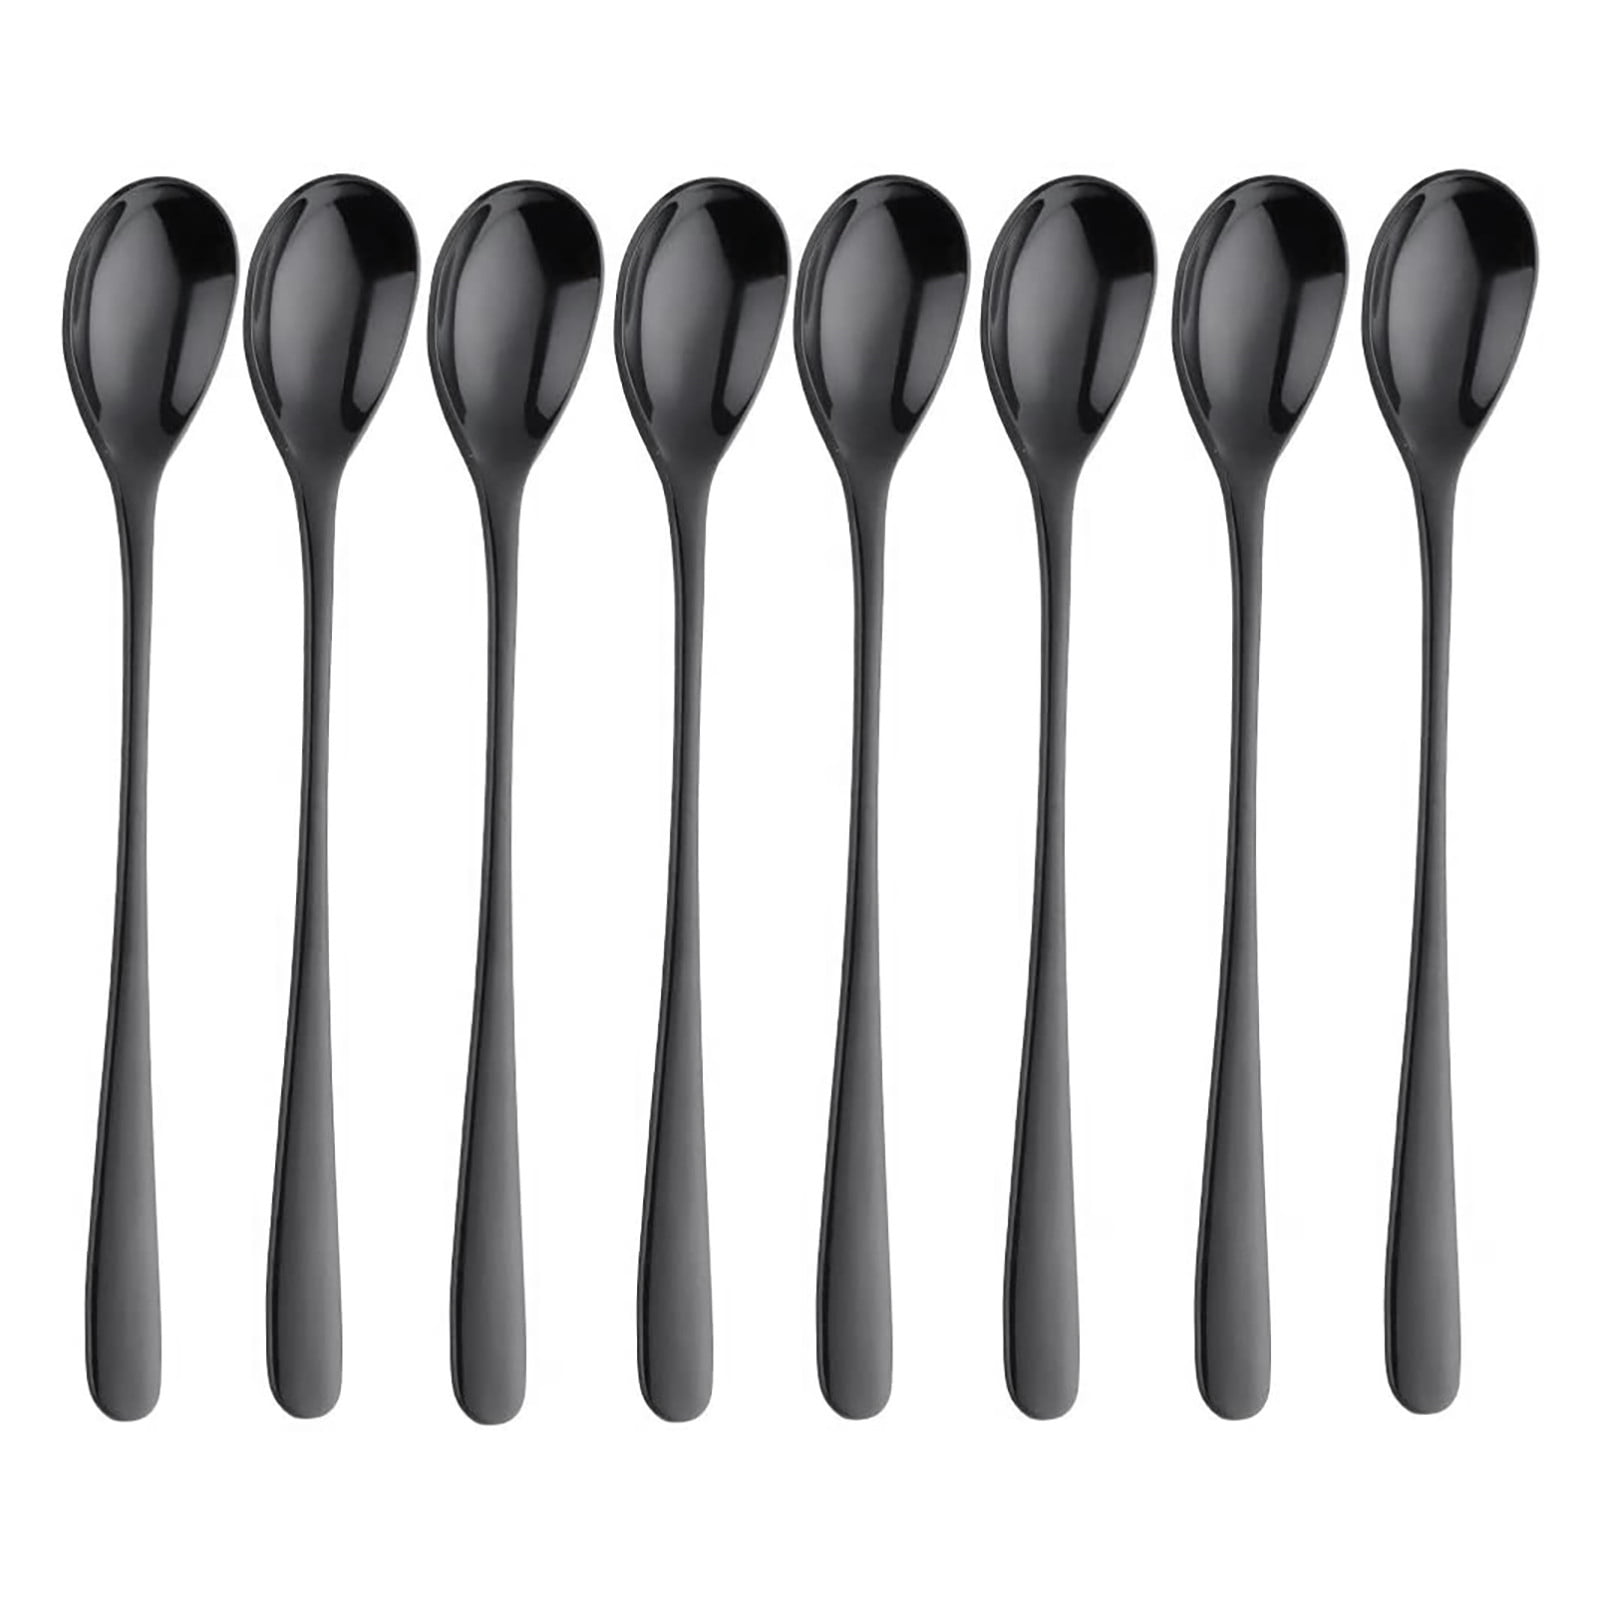 Buyer Star 12 Pieces Black Teaspoons 5.5-Inch Mini Coffee Spoons Stainless Steel Sugar Demitasse Espresso Spoons 